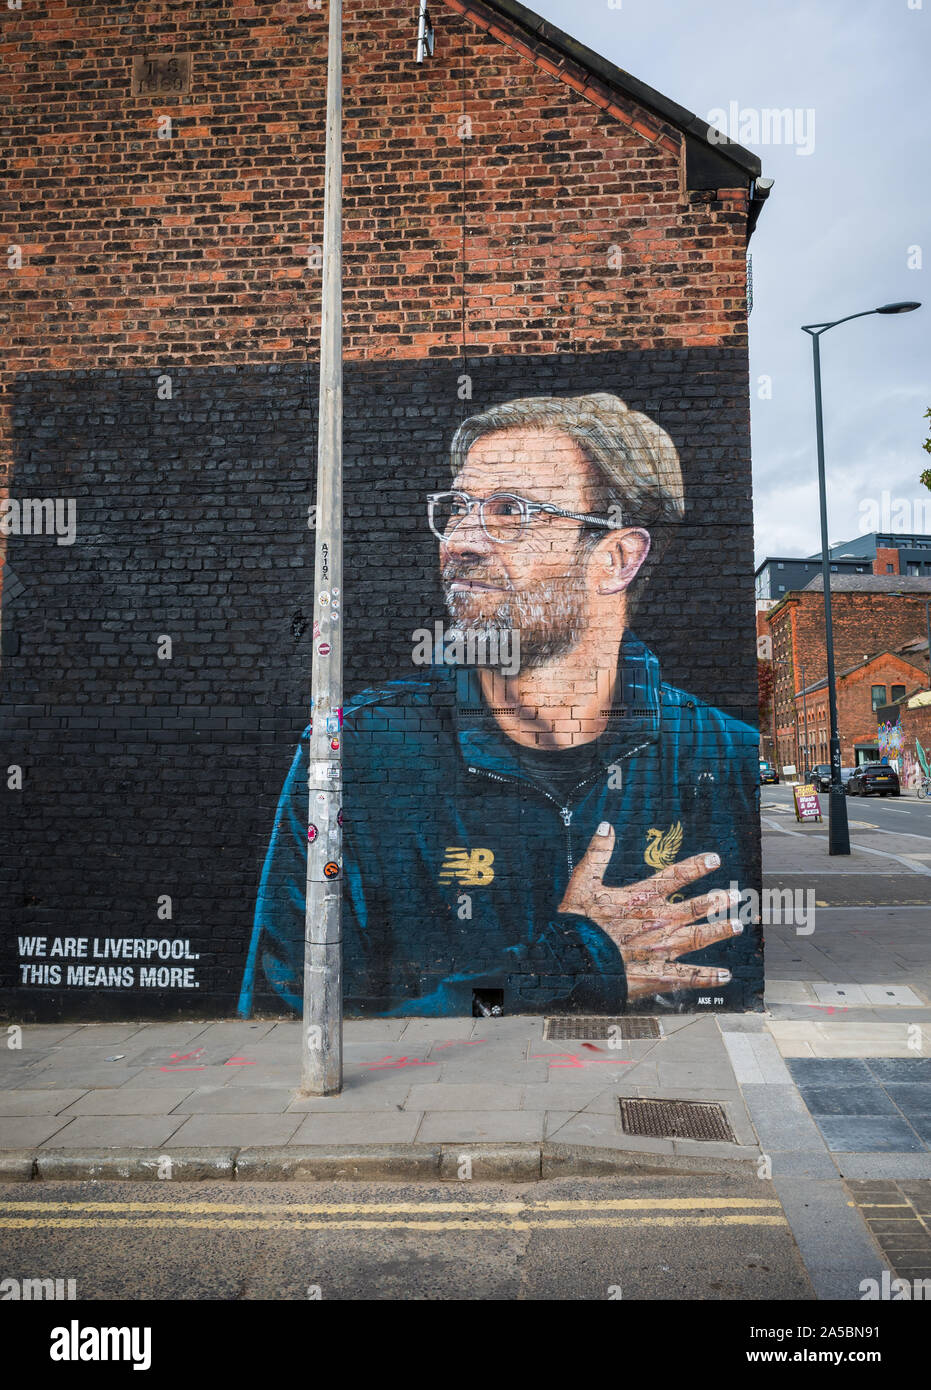 Liverpool, Merseyside, UK - 17. Oktober 2019: ein Wandbild von Liverpool Football Club Manager Jürgen Klopp an der Wand eines Gebäudes auf Liverpool, Mersey Stockfoto